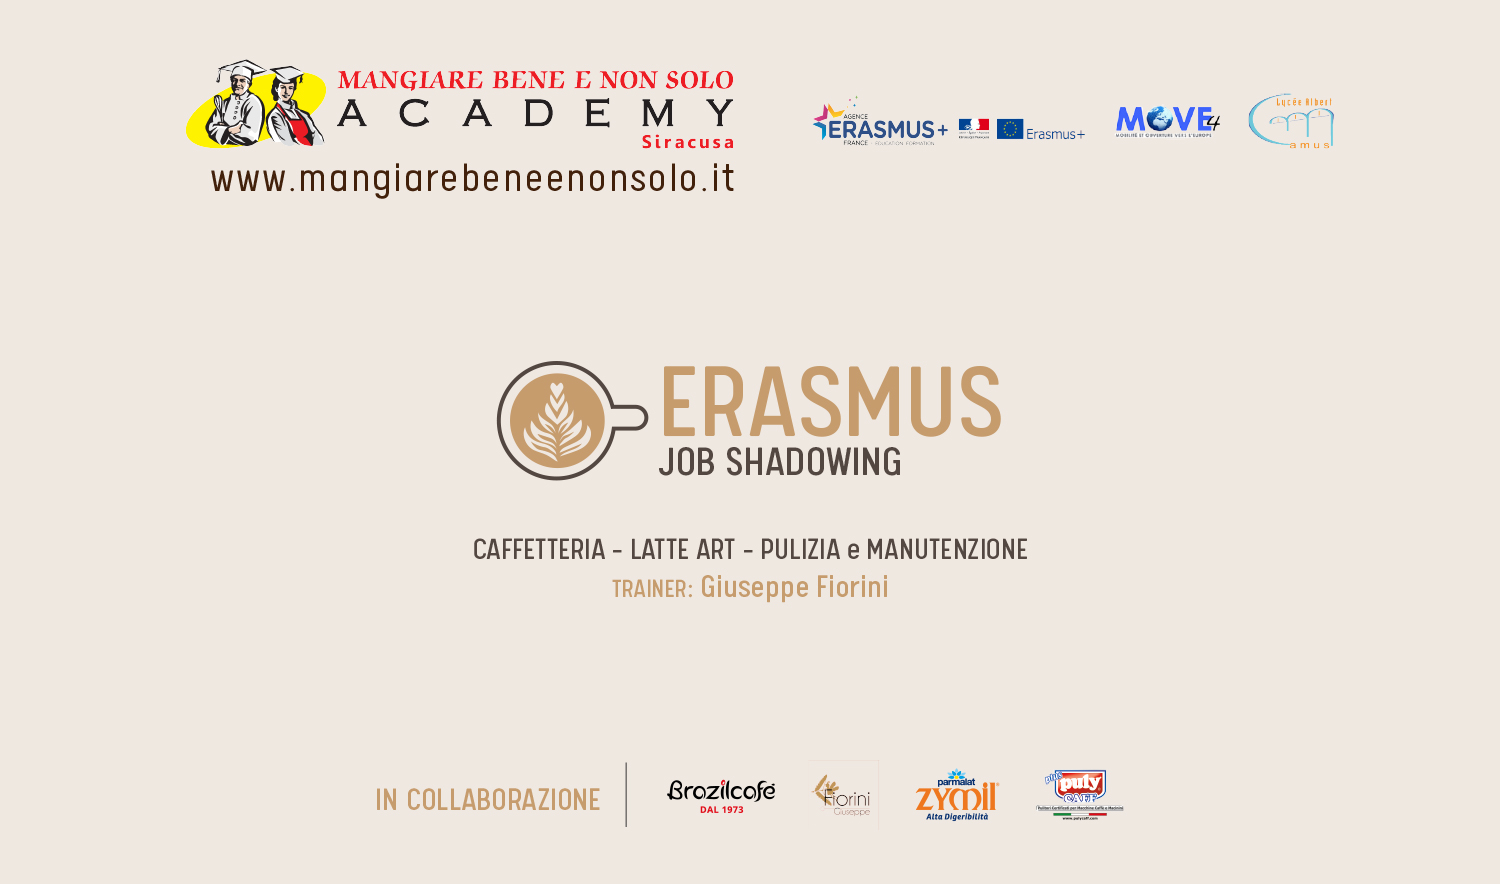 Erasmus MOVE4 di alta formazione in collaborazione con ACADEMY MANGIARE BENE www.brazilcafe.net